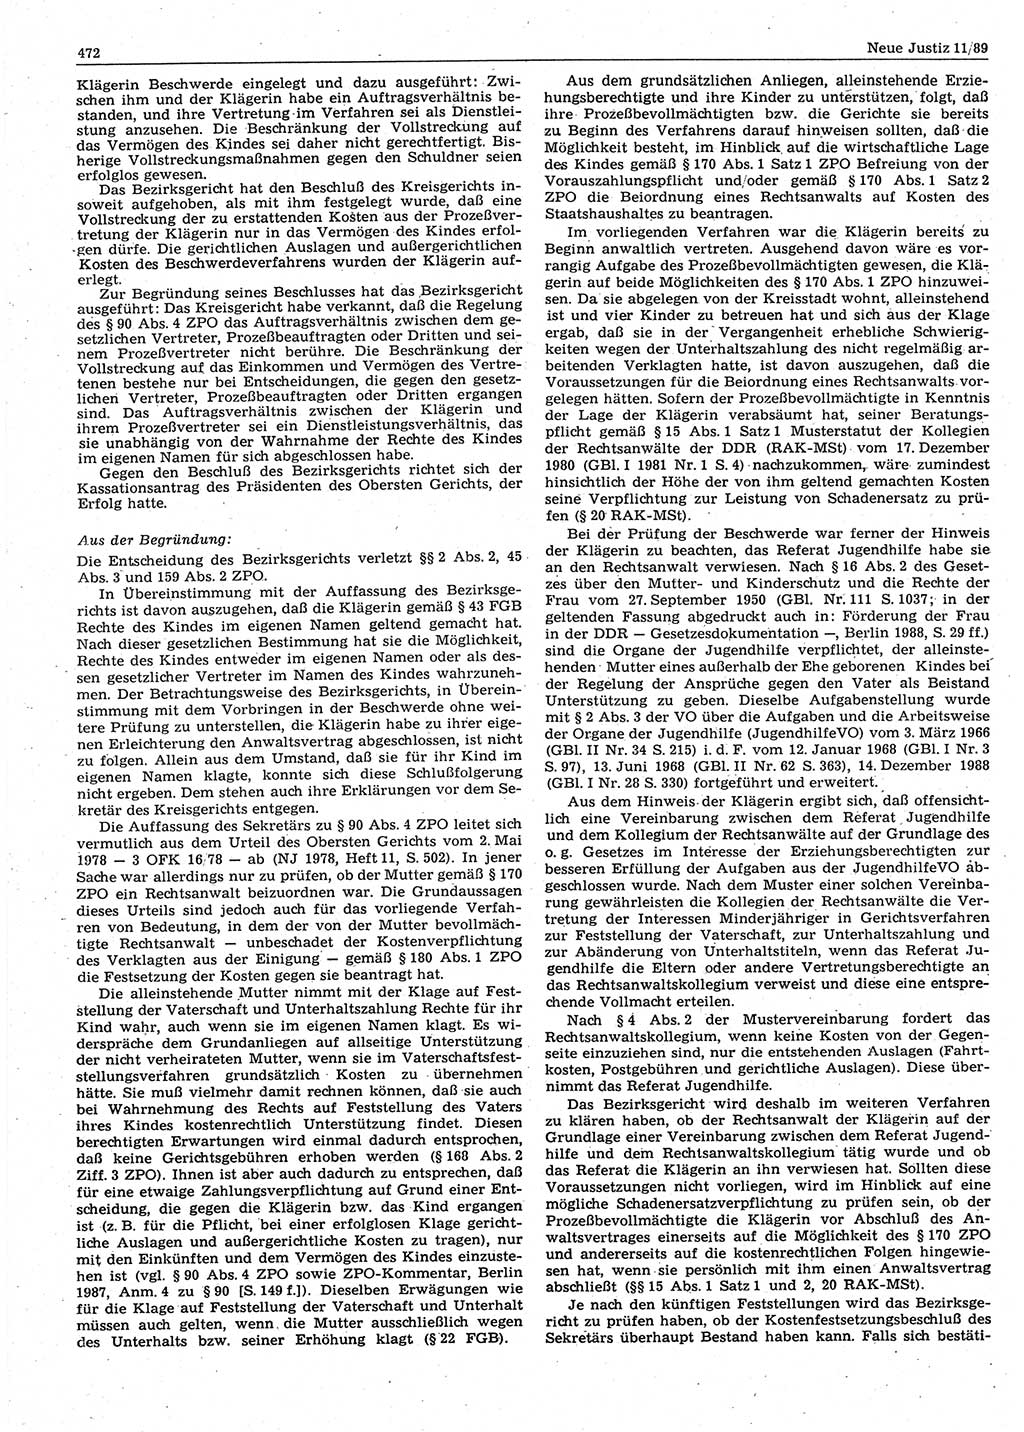 Neue Justiz (NJ), Zeitschrift für sozialistisches Recht und Gesetzlichkeit [Deutsche Demokratische Republik (DDR)], 43. Jahrgang 1989, Seite 472 (NJ DDR 1989, S. 472)